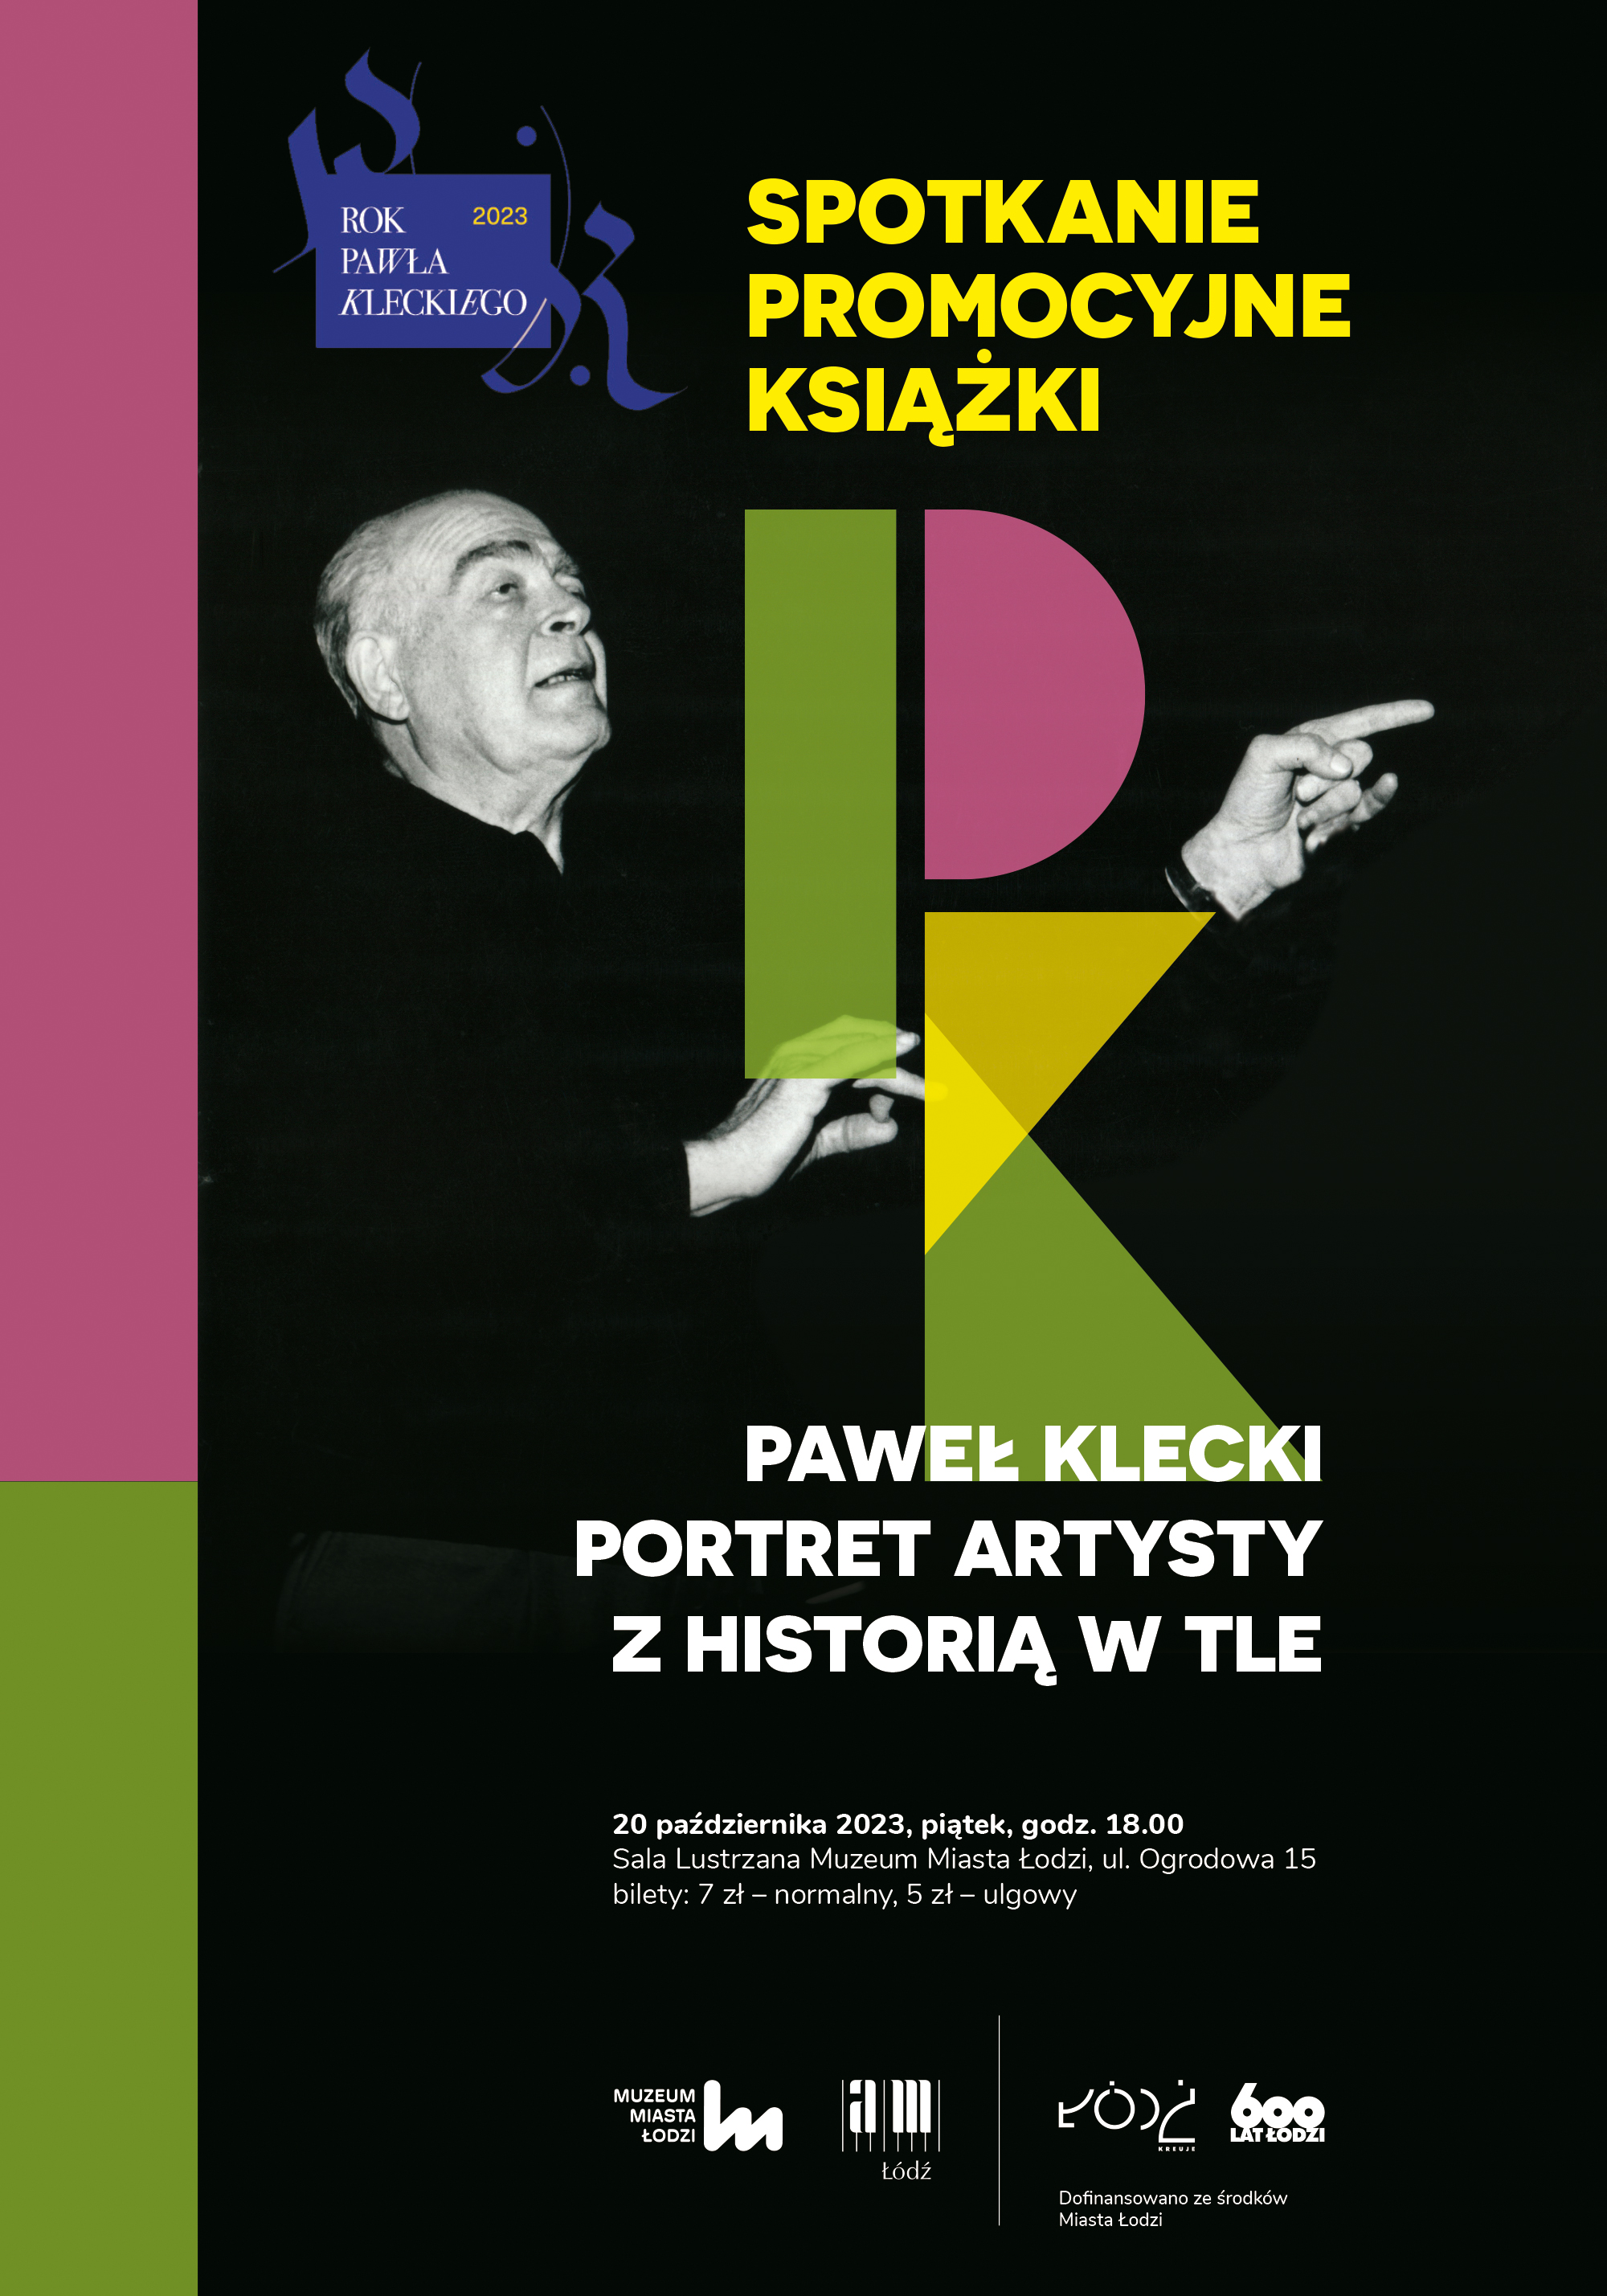 Spotkanie promocyjne książki PAWEŁ KLECKI. PORTRET ARTYSTY Z HISTORIĄ W TLE